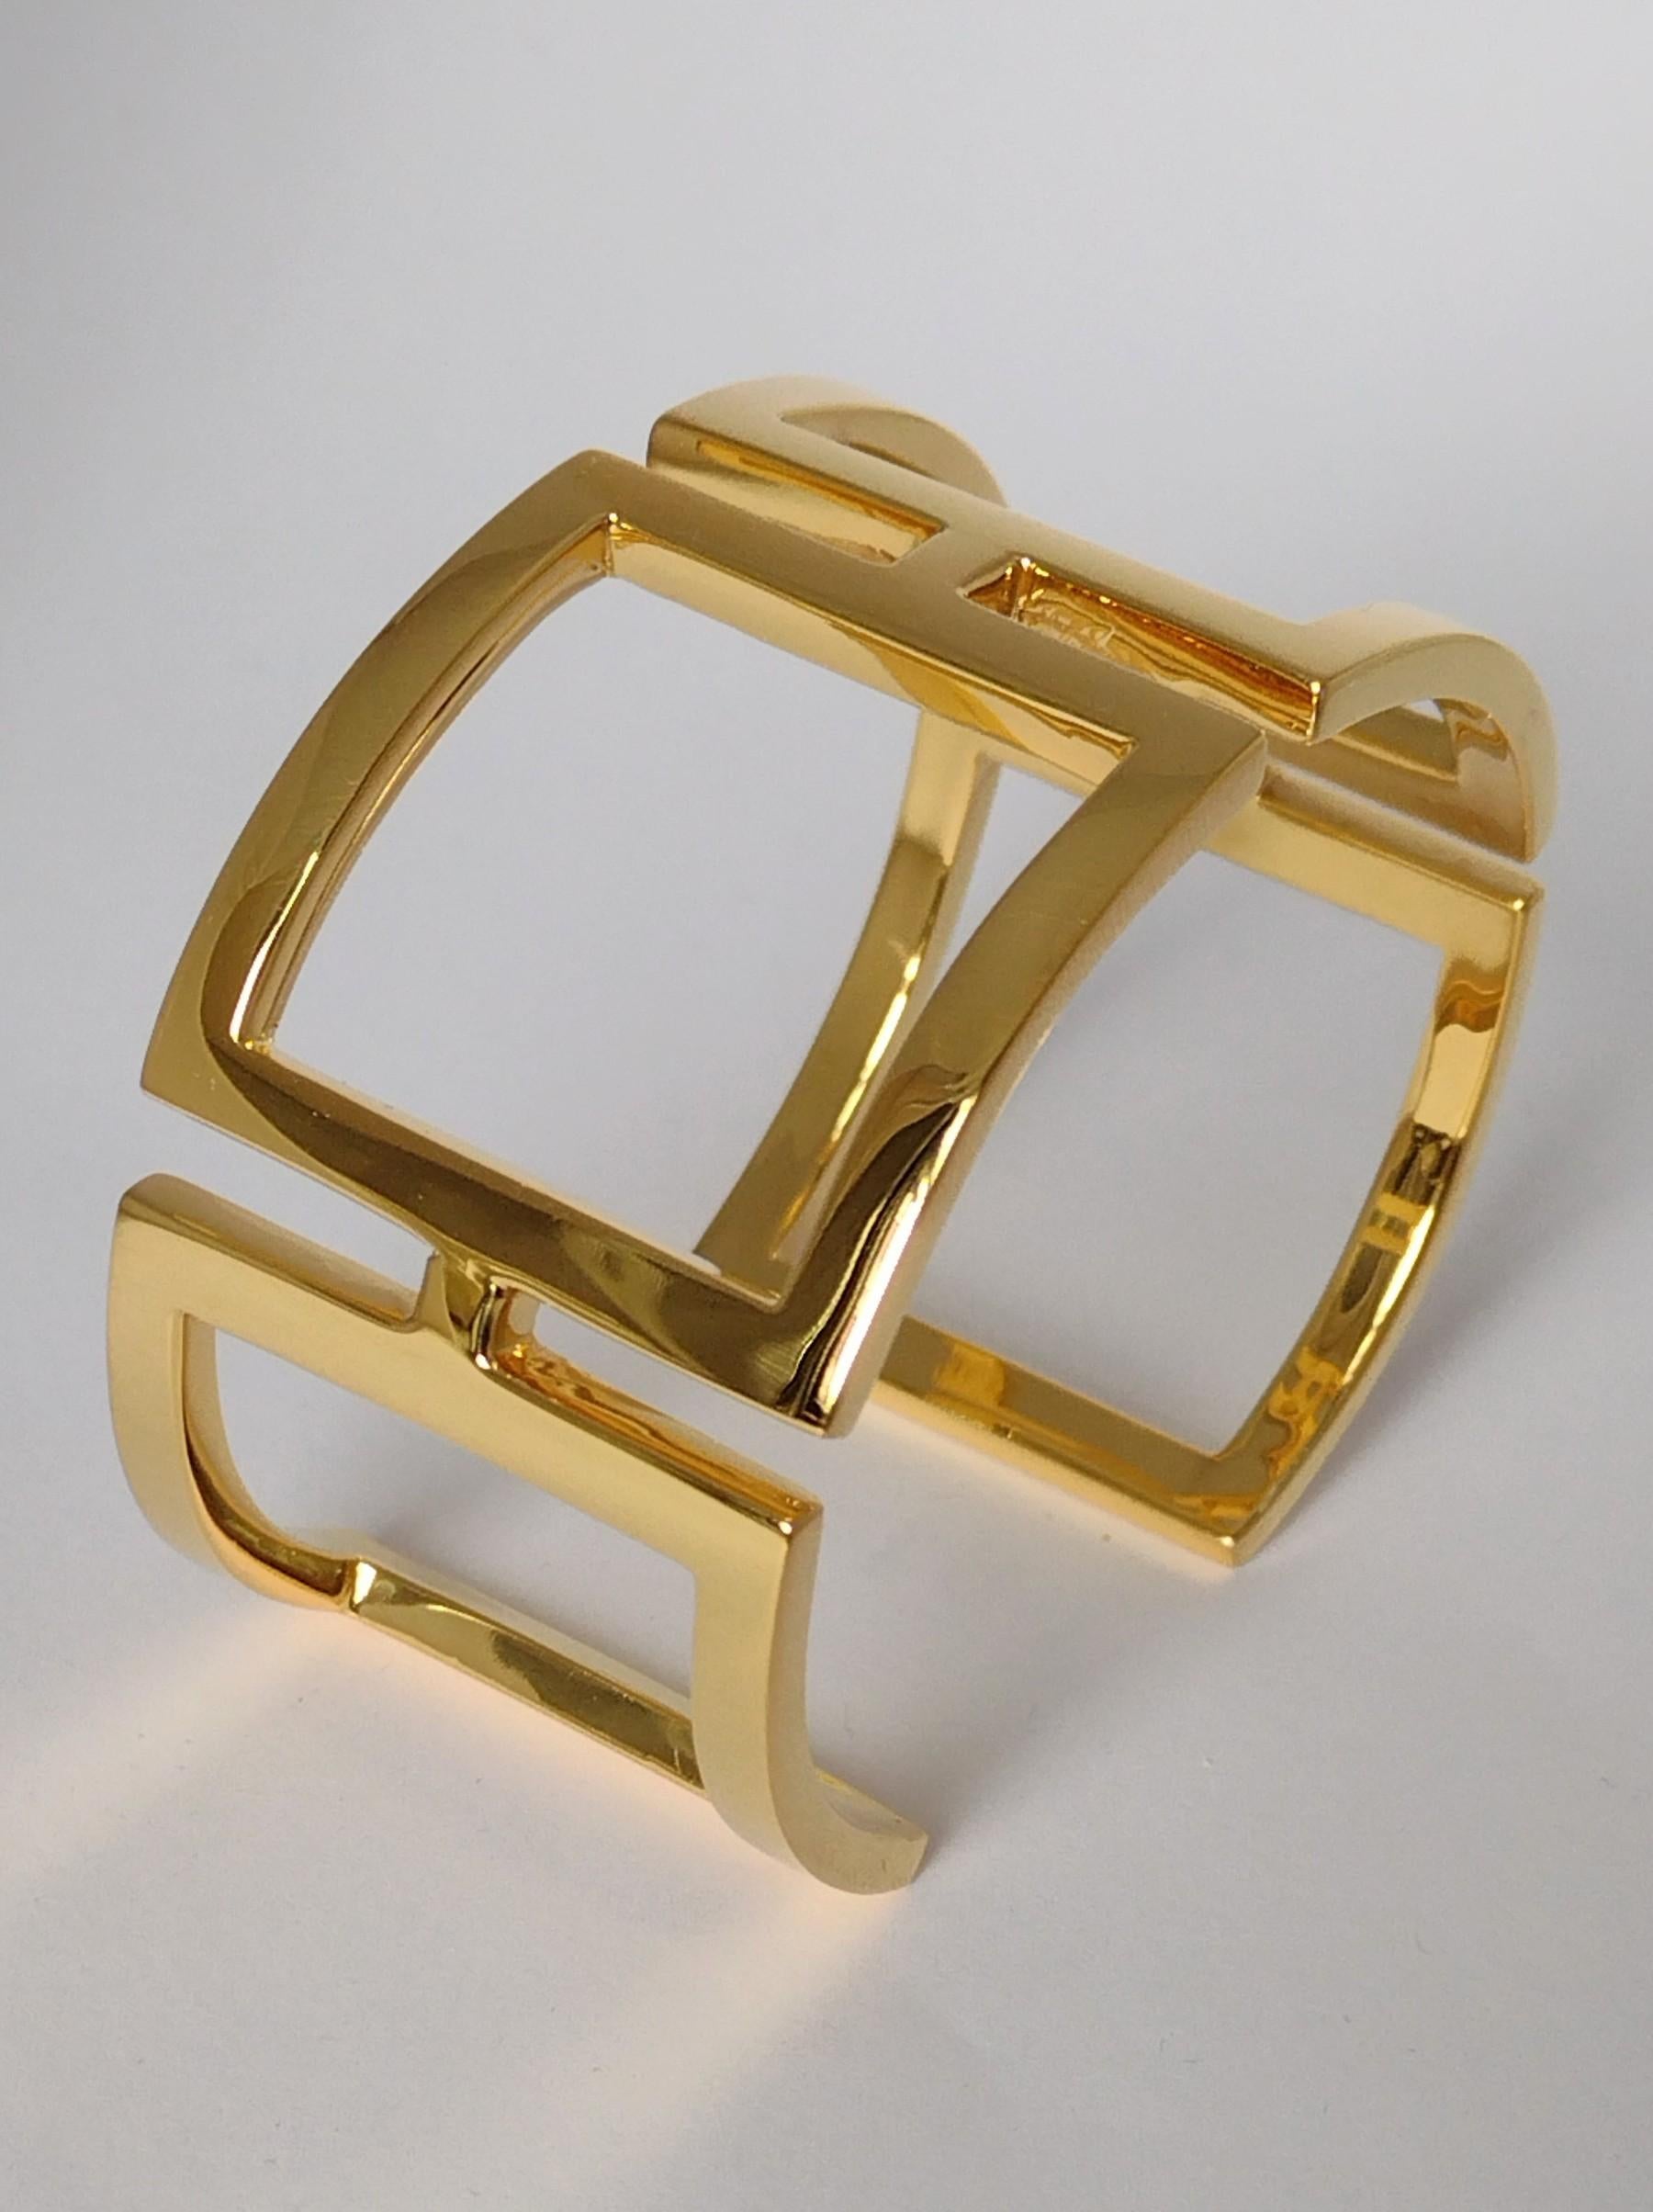 Le designer de Tiffany, Thomas Kurilla, a créé ce bracelet manchette rectangulaire plaqué or jaune 18 carats, d'une épaisseur de 3 x 1,5 mm.  mm 31 .25 de large. Il s'agit de l'un de mes premiers designs et il a été vendu chez Tiffany's en argent